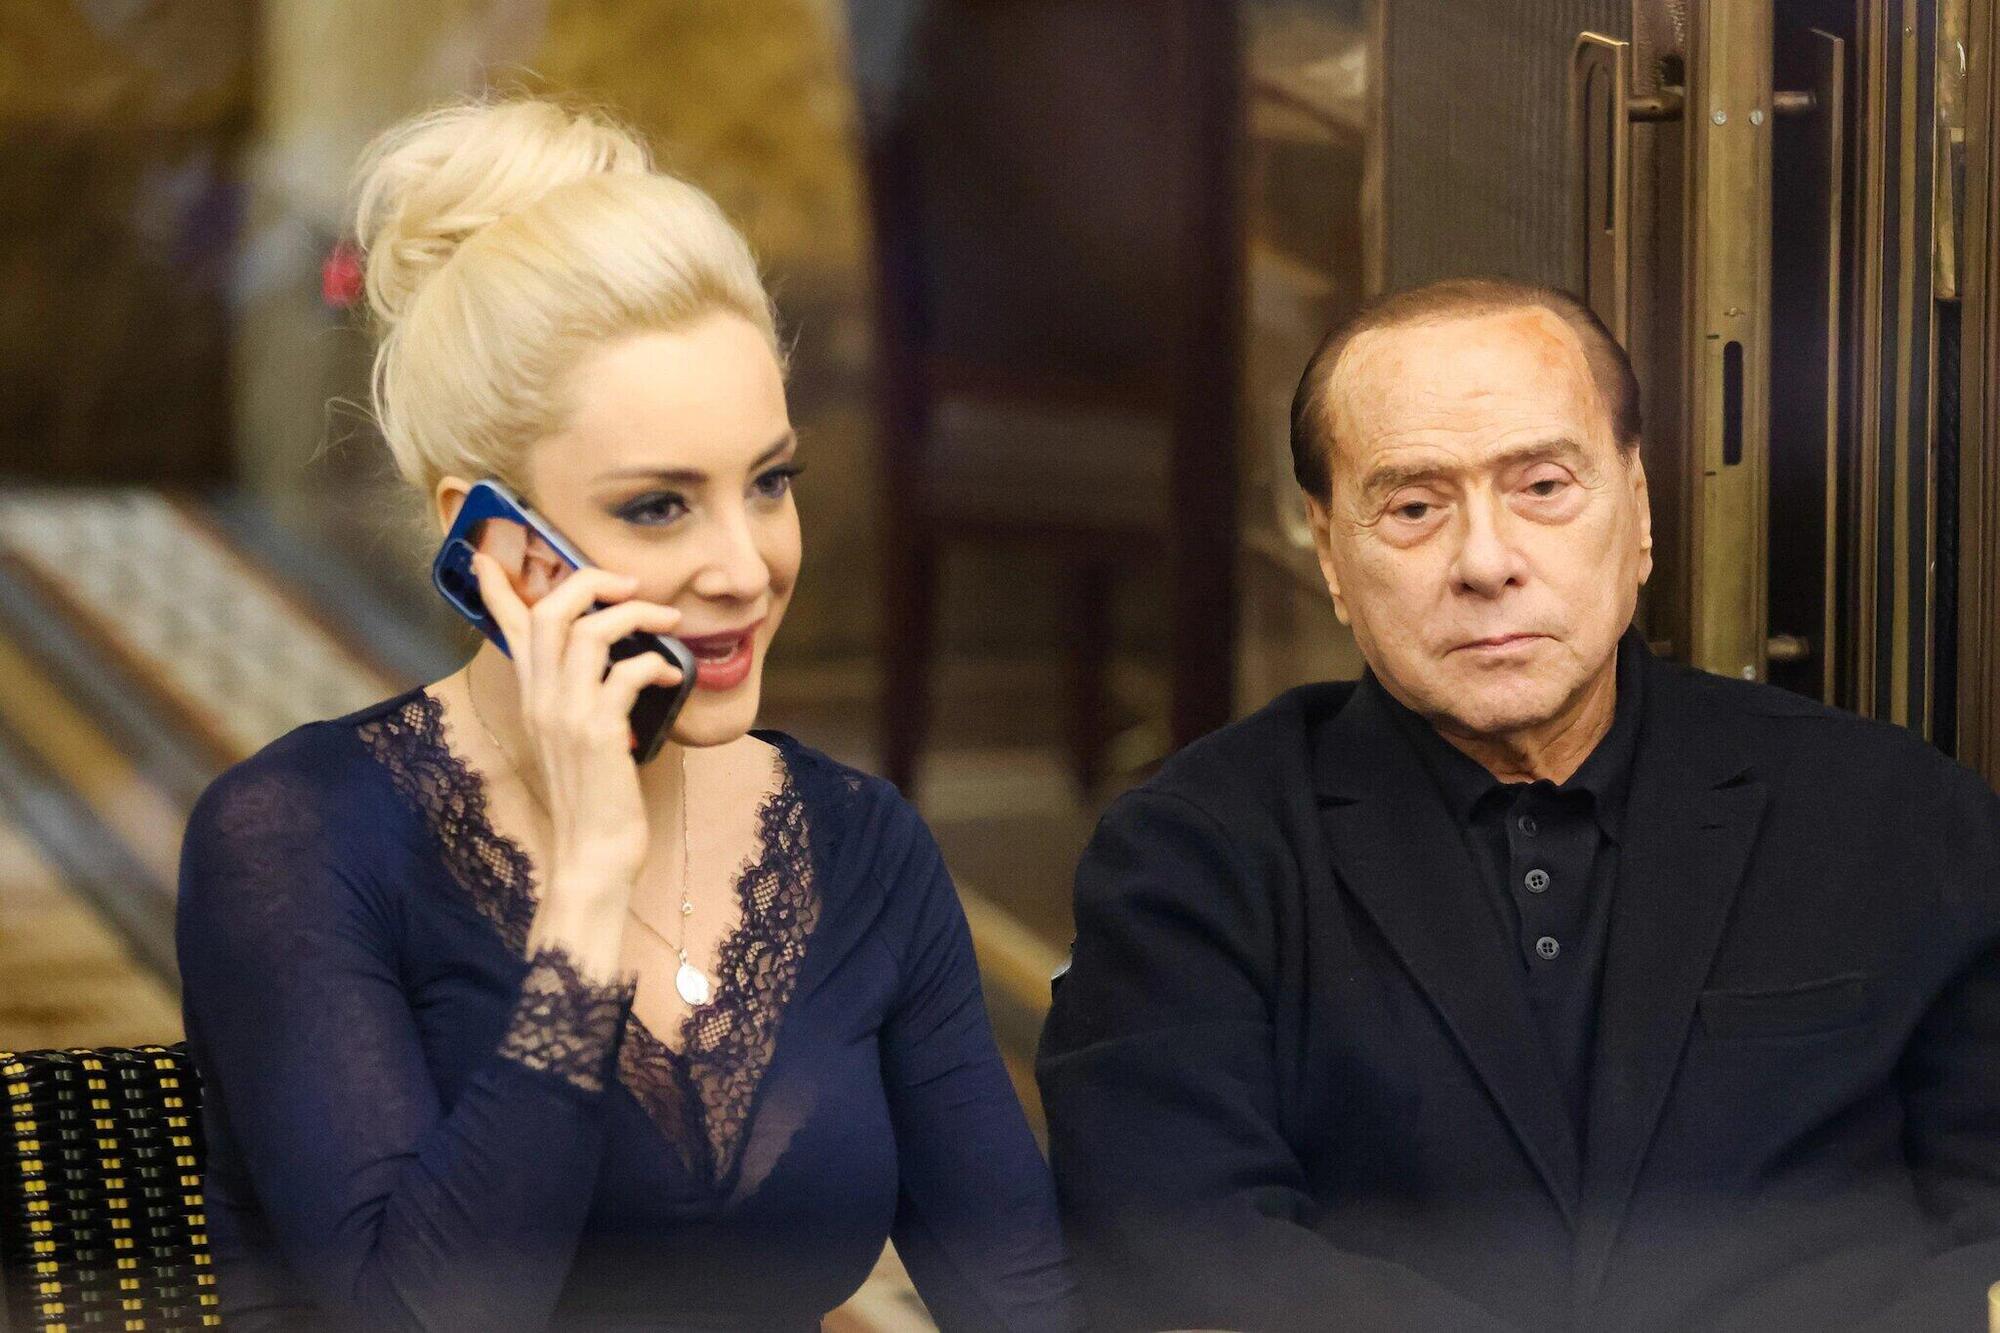 Marta Fascina e Silvio Berlusconi